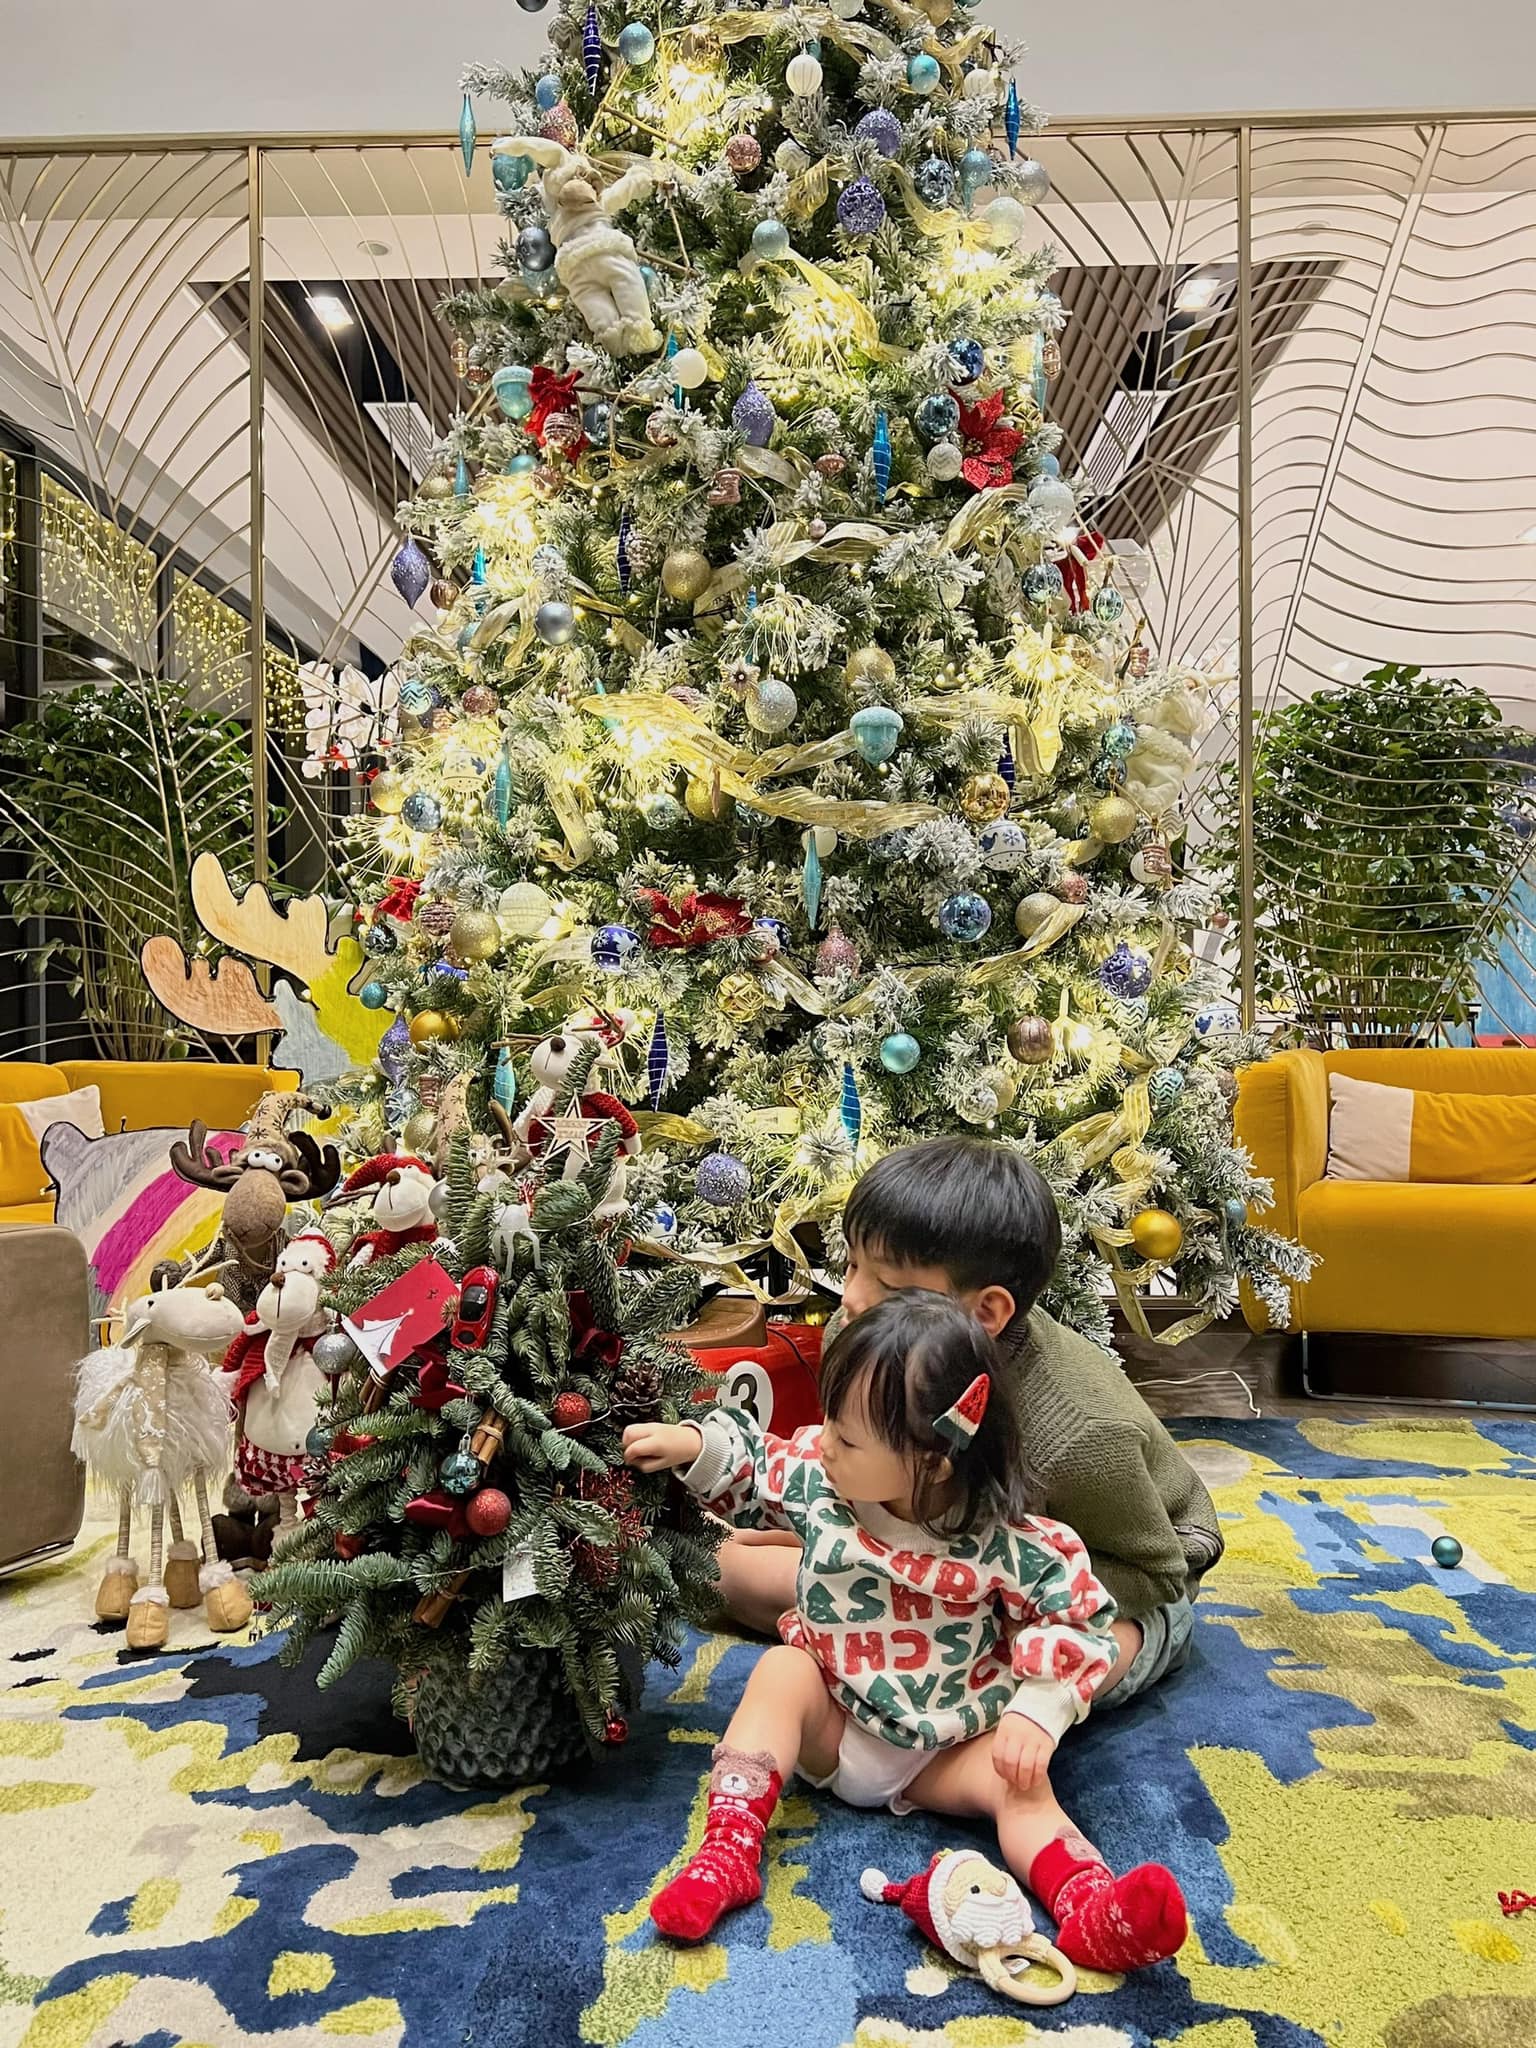 Giáng Sinh tại nhà sao: Cường Đô La sắm cây thông khổng lồ, Hà Hồ có Lisa - Leon phụ 'trang trí' - Ảnh 15